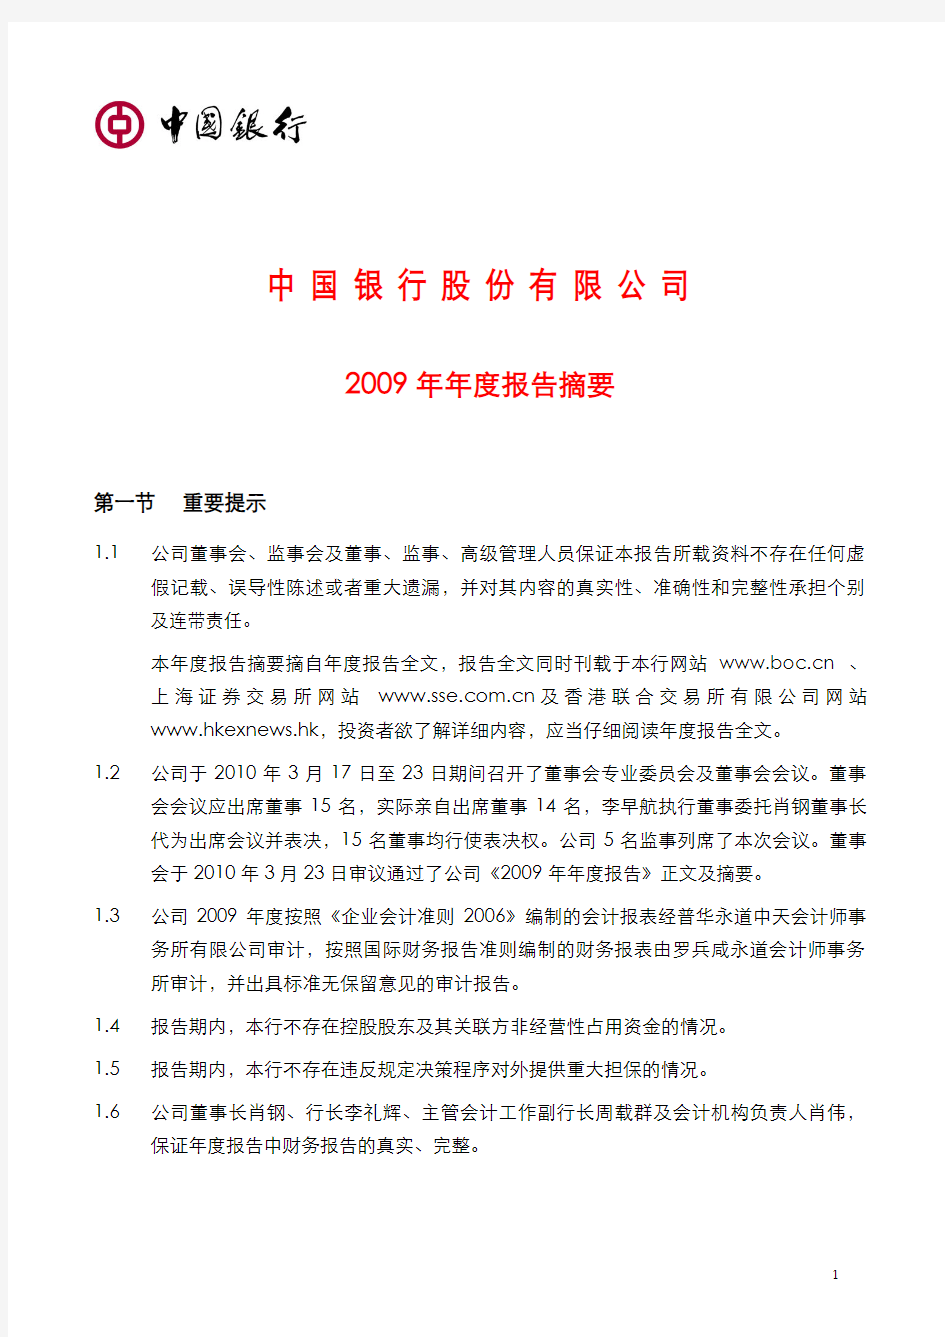 中国银行2009年度报告摘要601988_2009_nzy